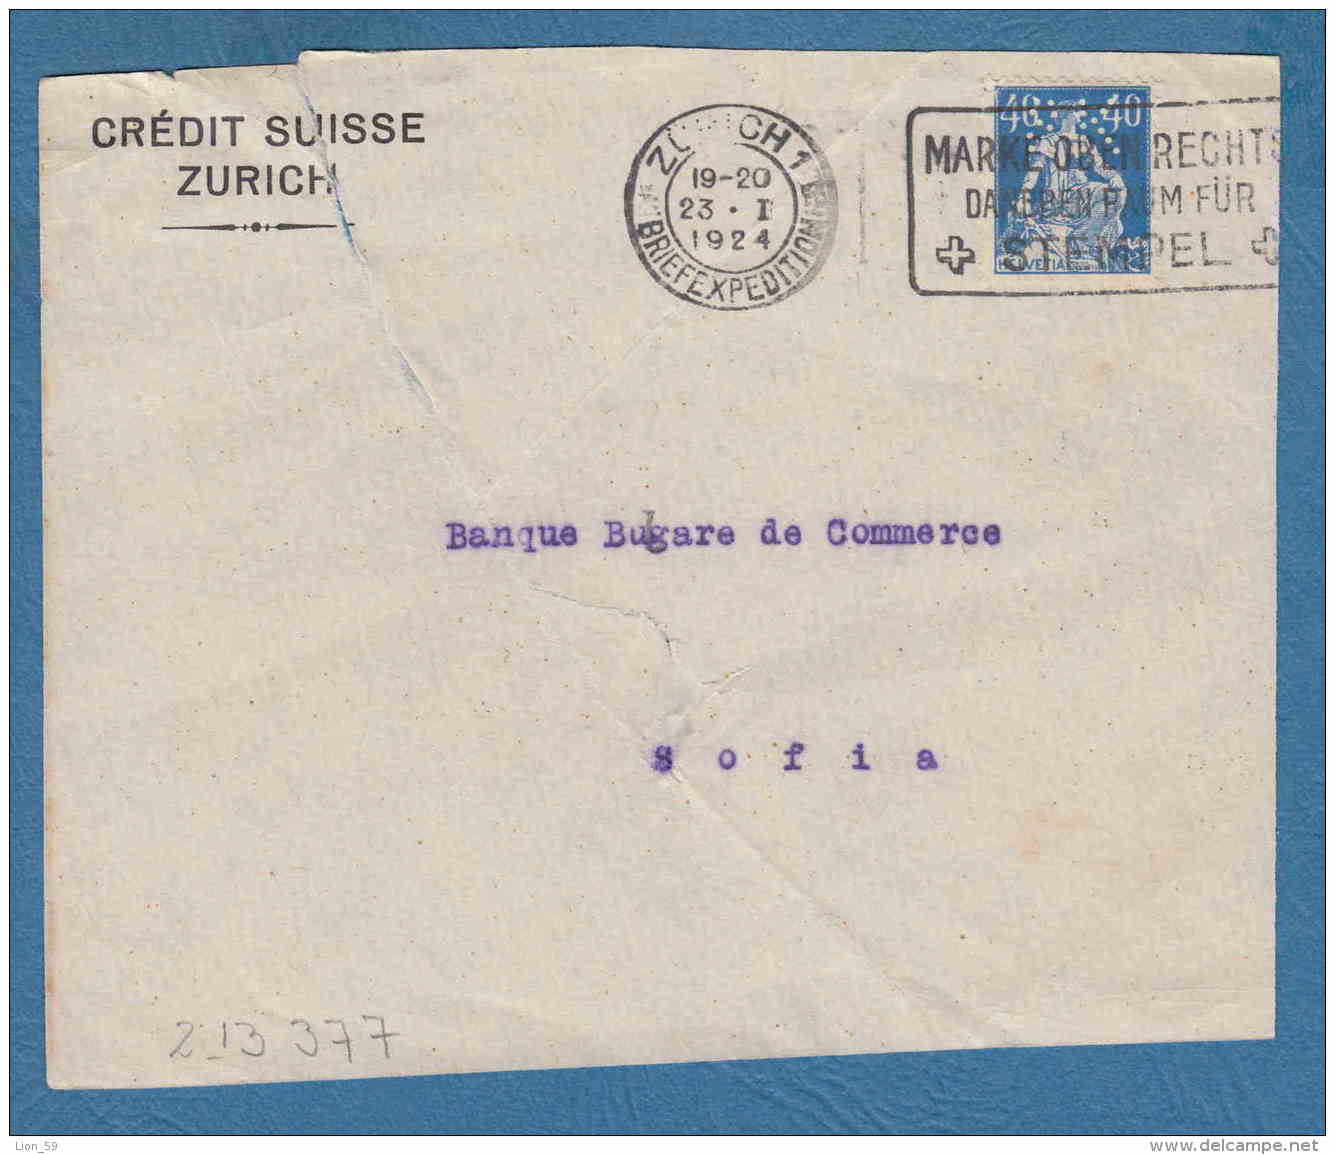 213377 / 1924 - 40 C. - CREDIT SUISSE ZURICH - Perfin Perfores Perforiert Gezähnt Perforati Switzerland Suisse Schweiz - Gezähnt (perforiert)